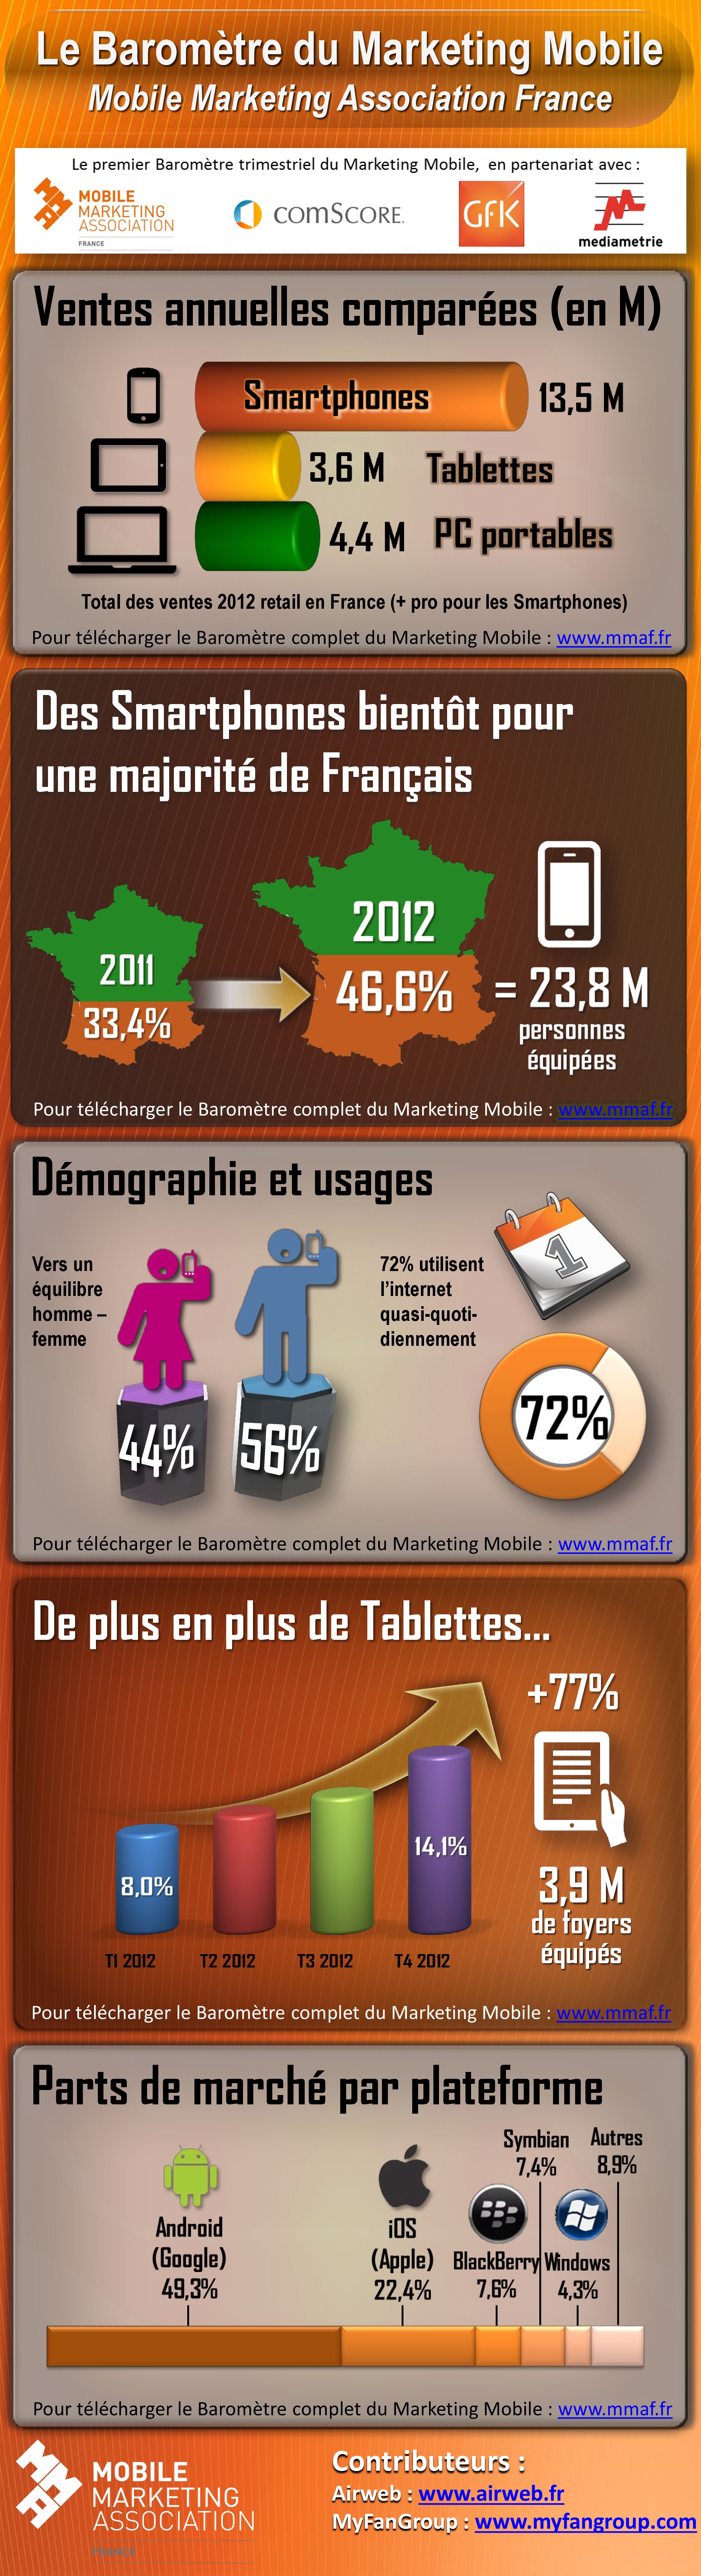 barometre infographie marketing mobile france